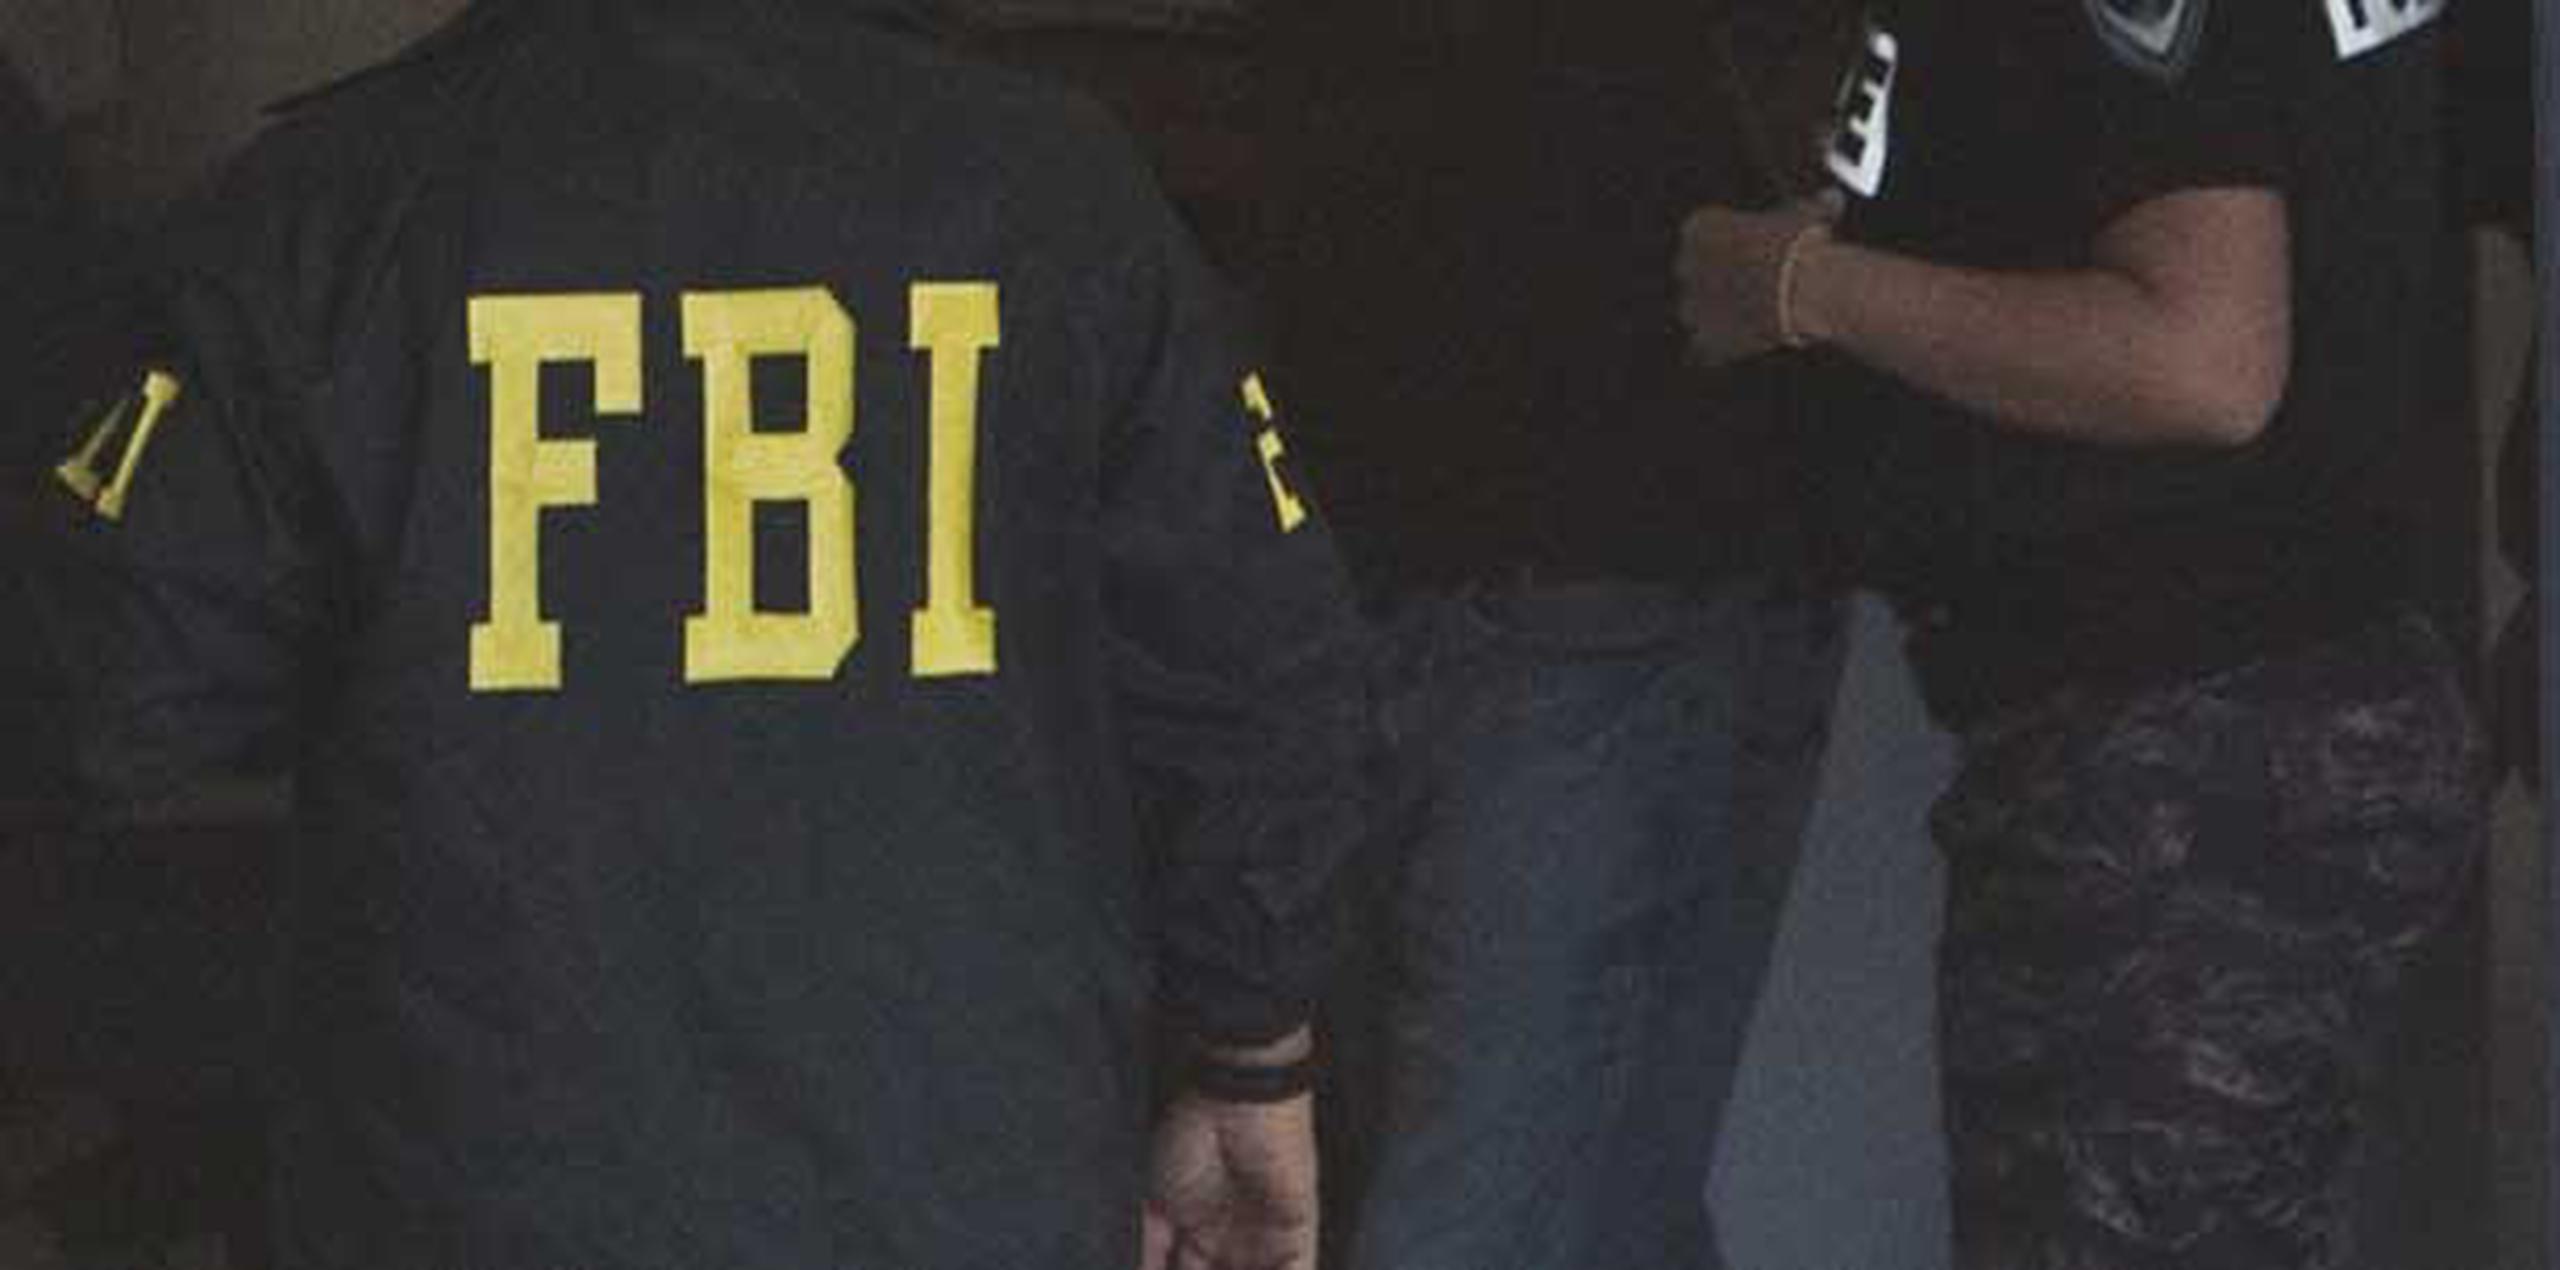 Tras el hallazgo se notificó a personal de la División de Robo a Bancos de la Policía, que coopera con el FBI en la pesquisa. (Archivo)